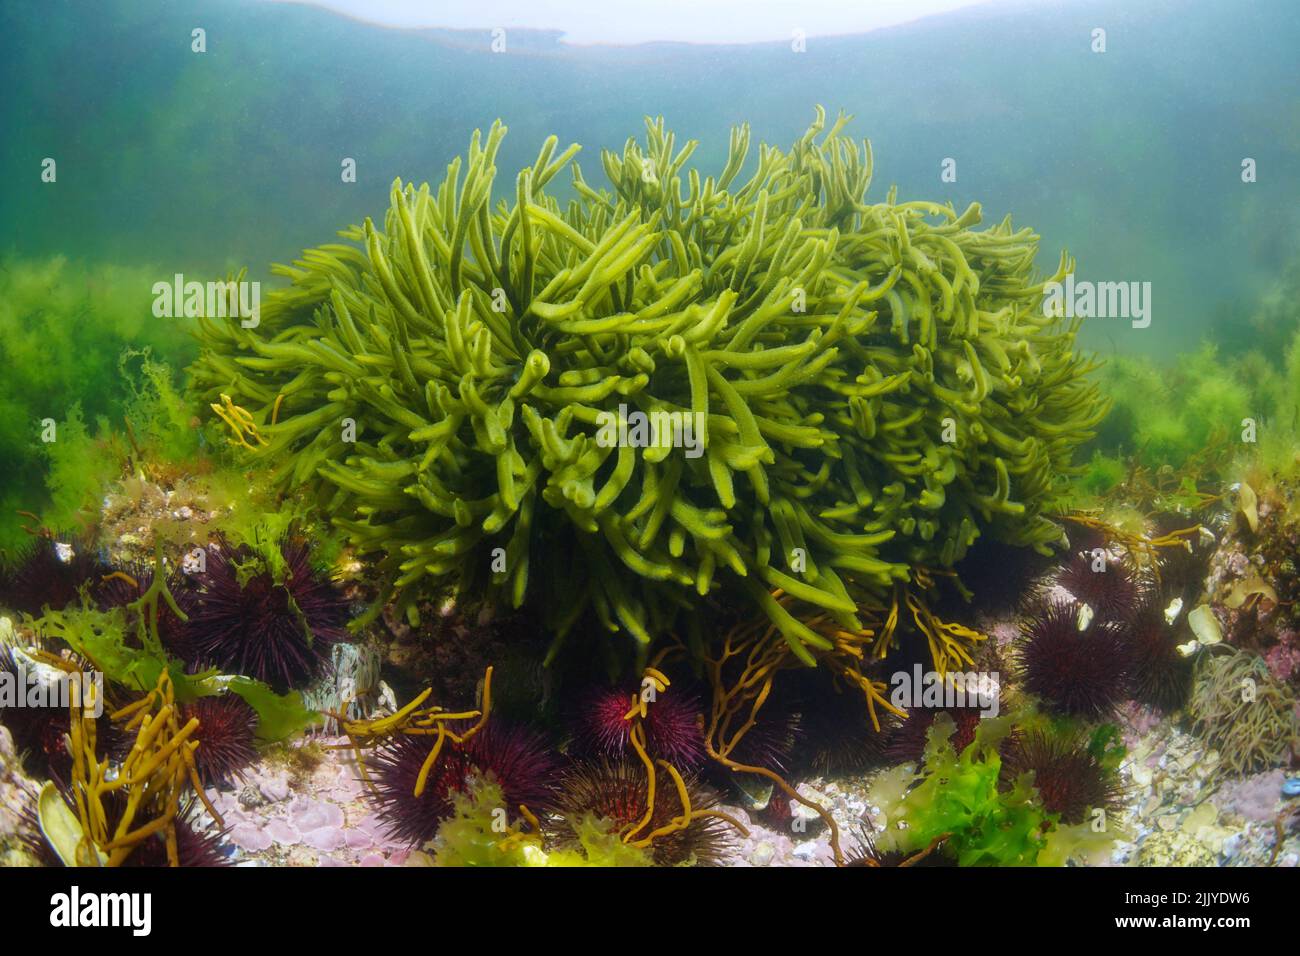 Cuerno de alga verde, Alga marina Codium tomentosum submarina en el océano, Atlántico oriental, España, Galicia Foto de stock